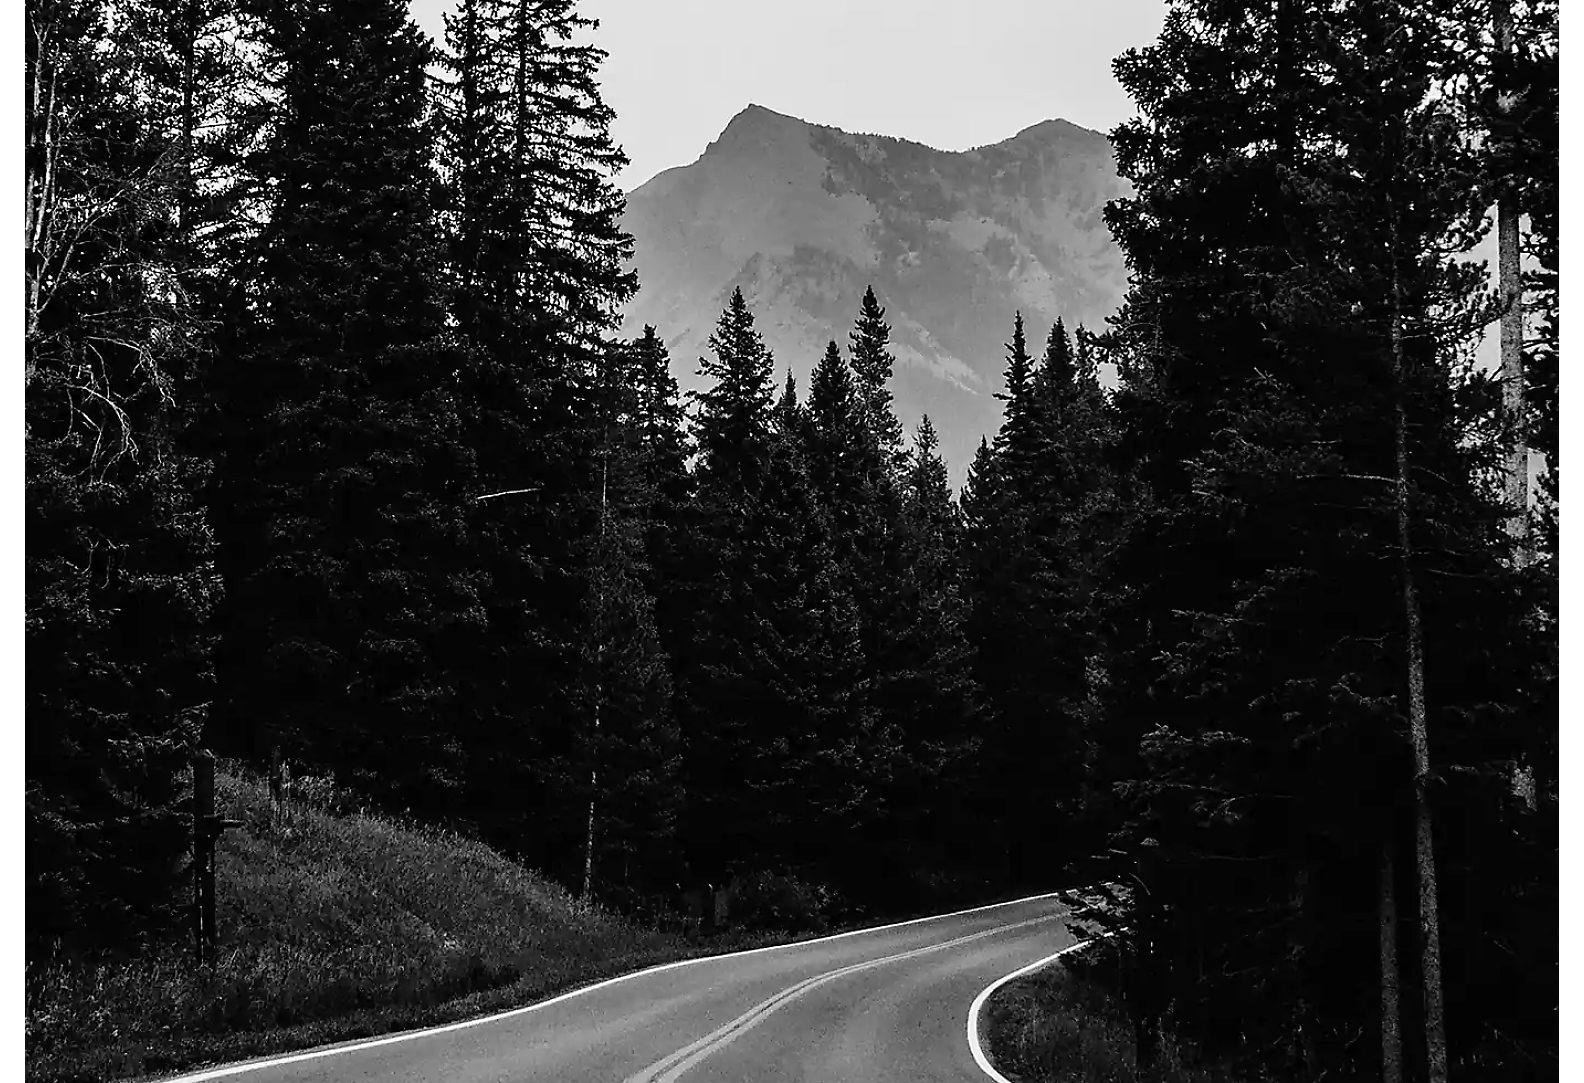 Une route à deux voies traversant une forêt, avec le sommet d'une montagne en arrière-plan, en noir et blanc.